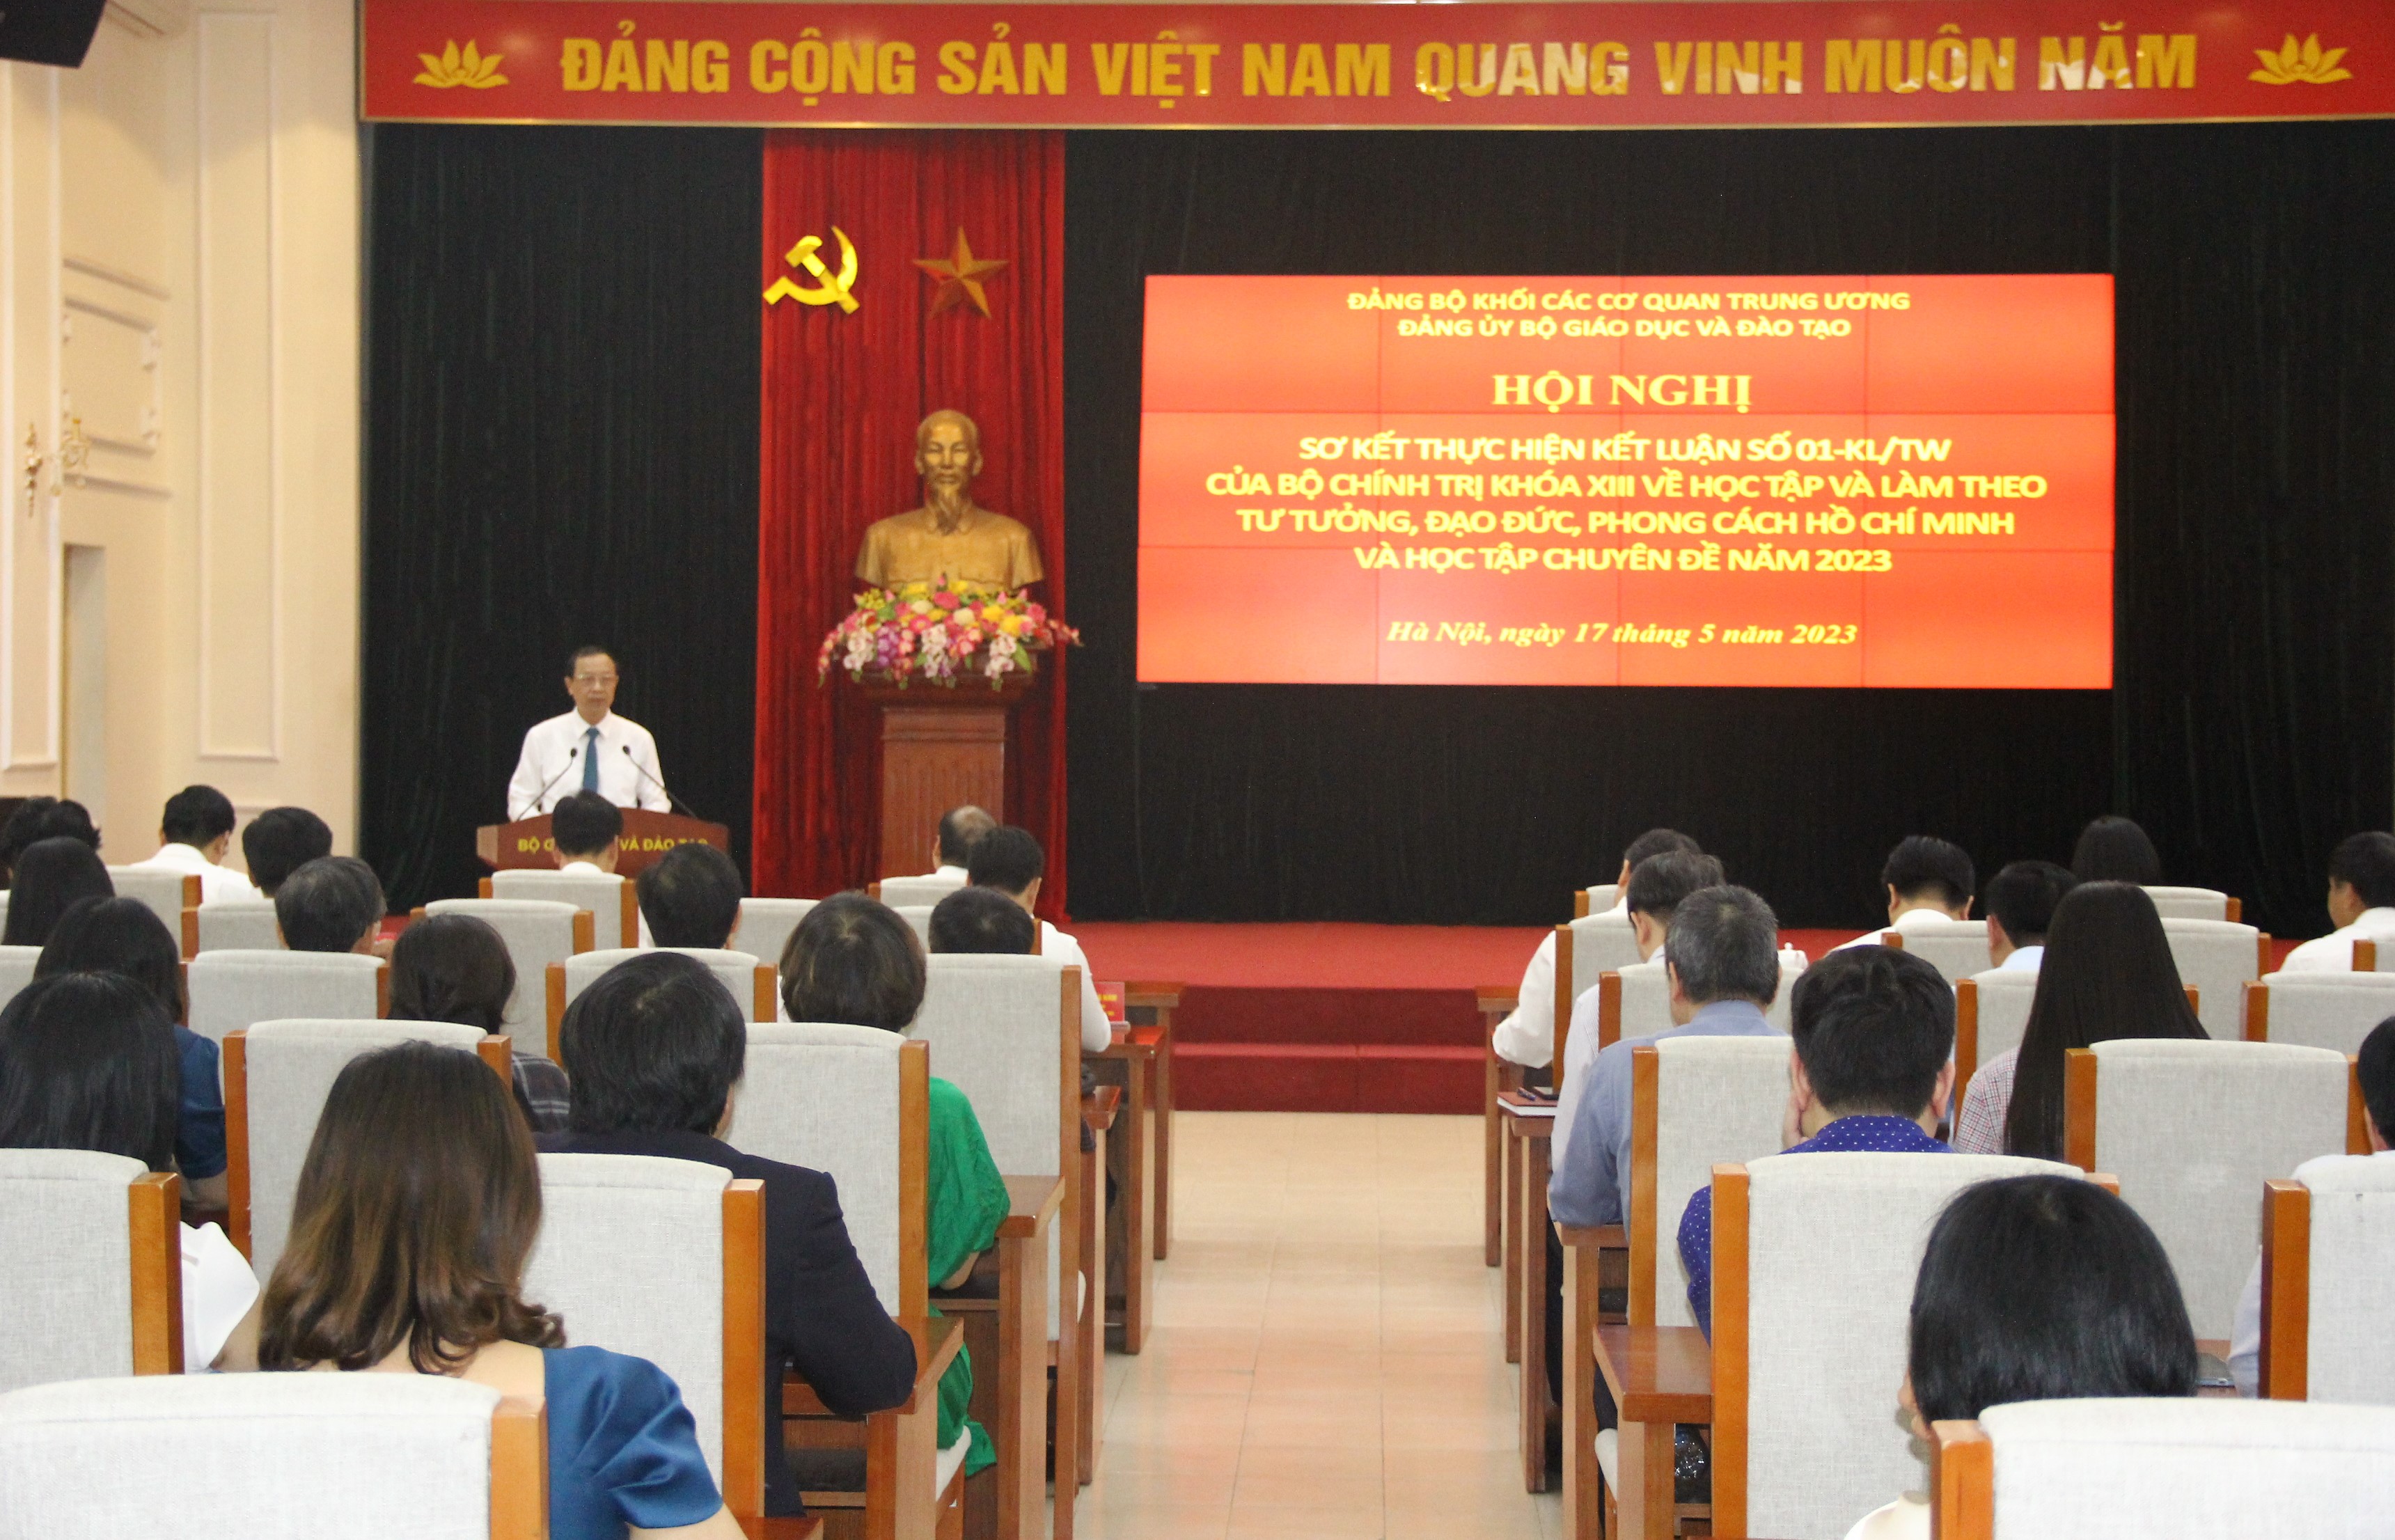 Hội nghị sơ kết thực hiện Kết luận số 01-KL/TW của Bộ Chính trị khóa XIII về học tập và làm theo tư tưởng, đạo đức, phong cách Hồ Chí Minh và học tập chuyên đề năm 2023 tại Bộ GD&ĐT.